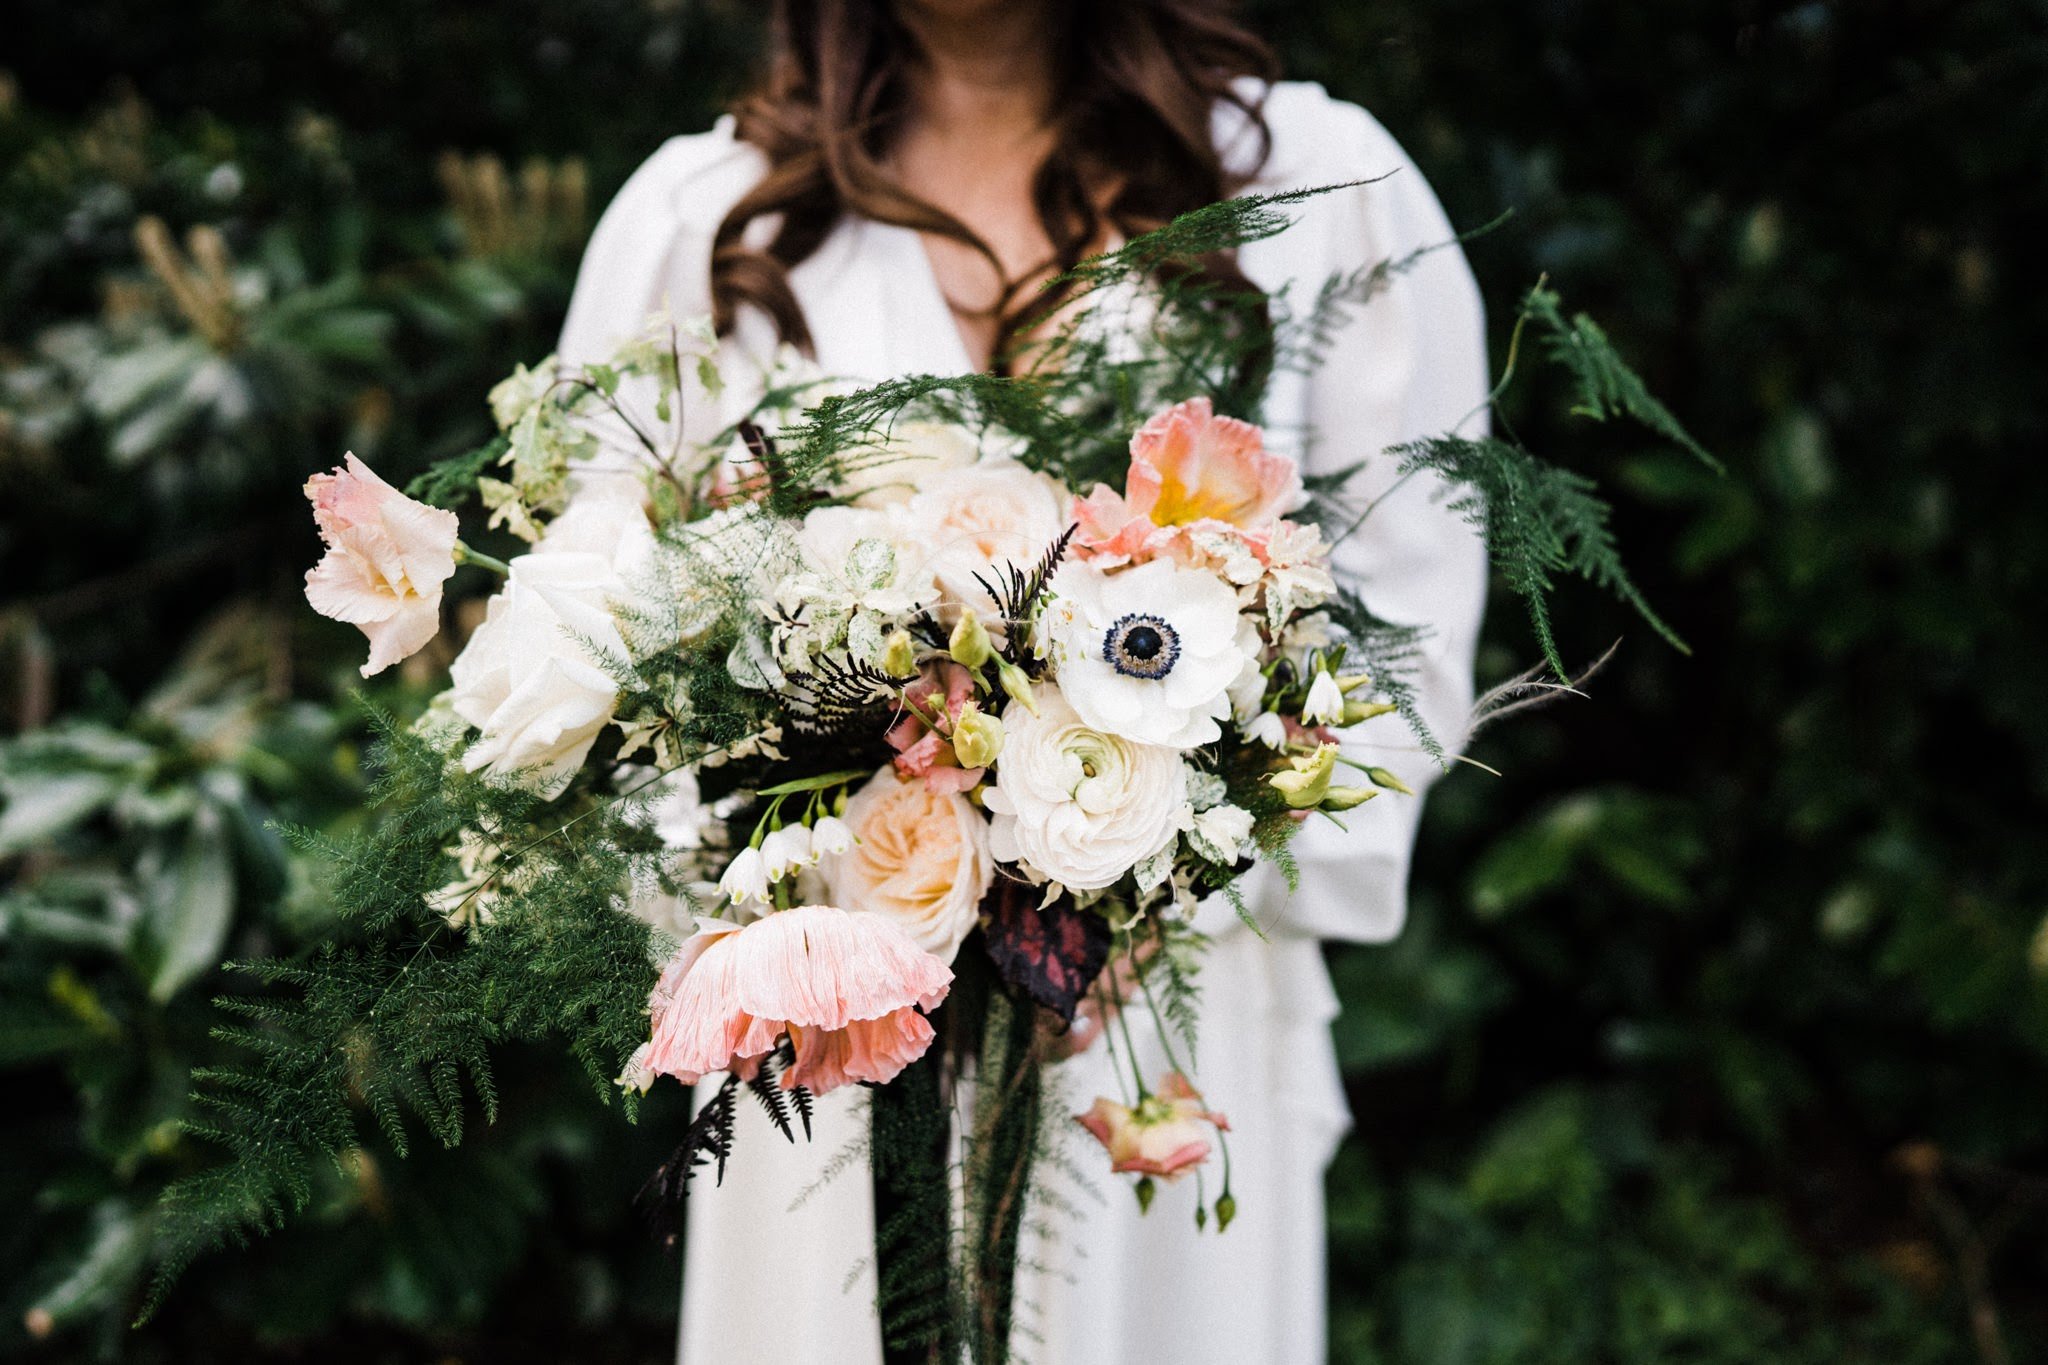 Forbesfield-Weddingflowers-Laura&Tristram11.jpg